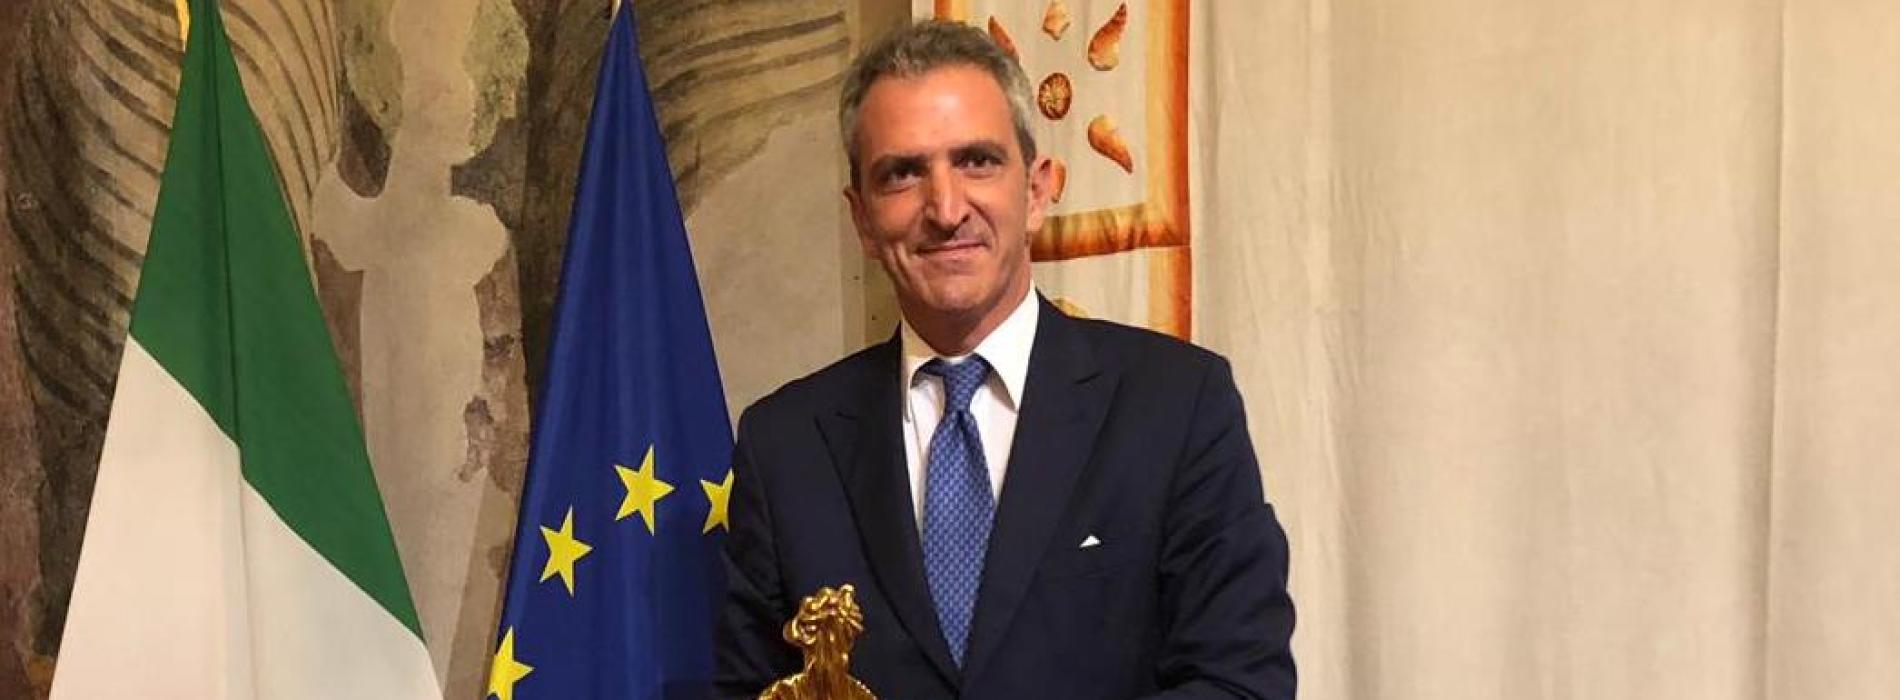 Premio Guido Dorso a Luigi Traettino, la cerimonia nel Senato